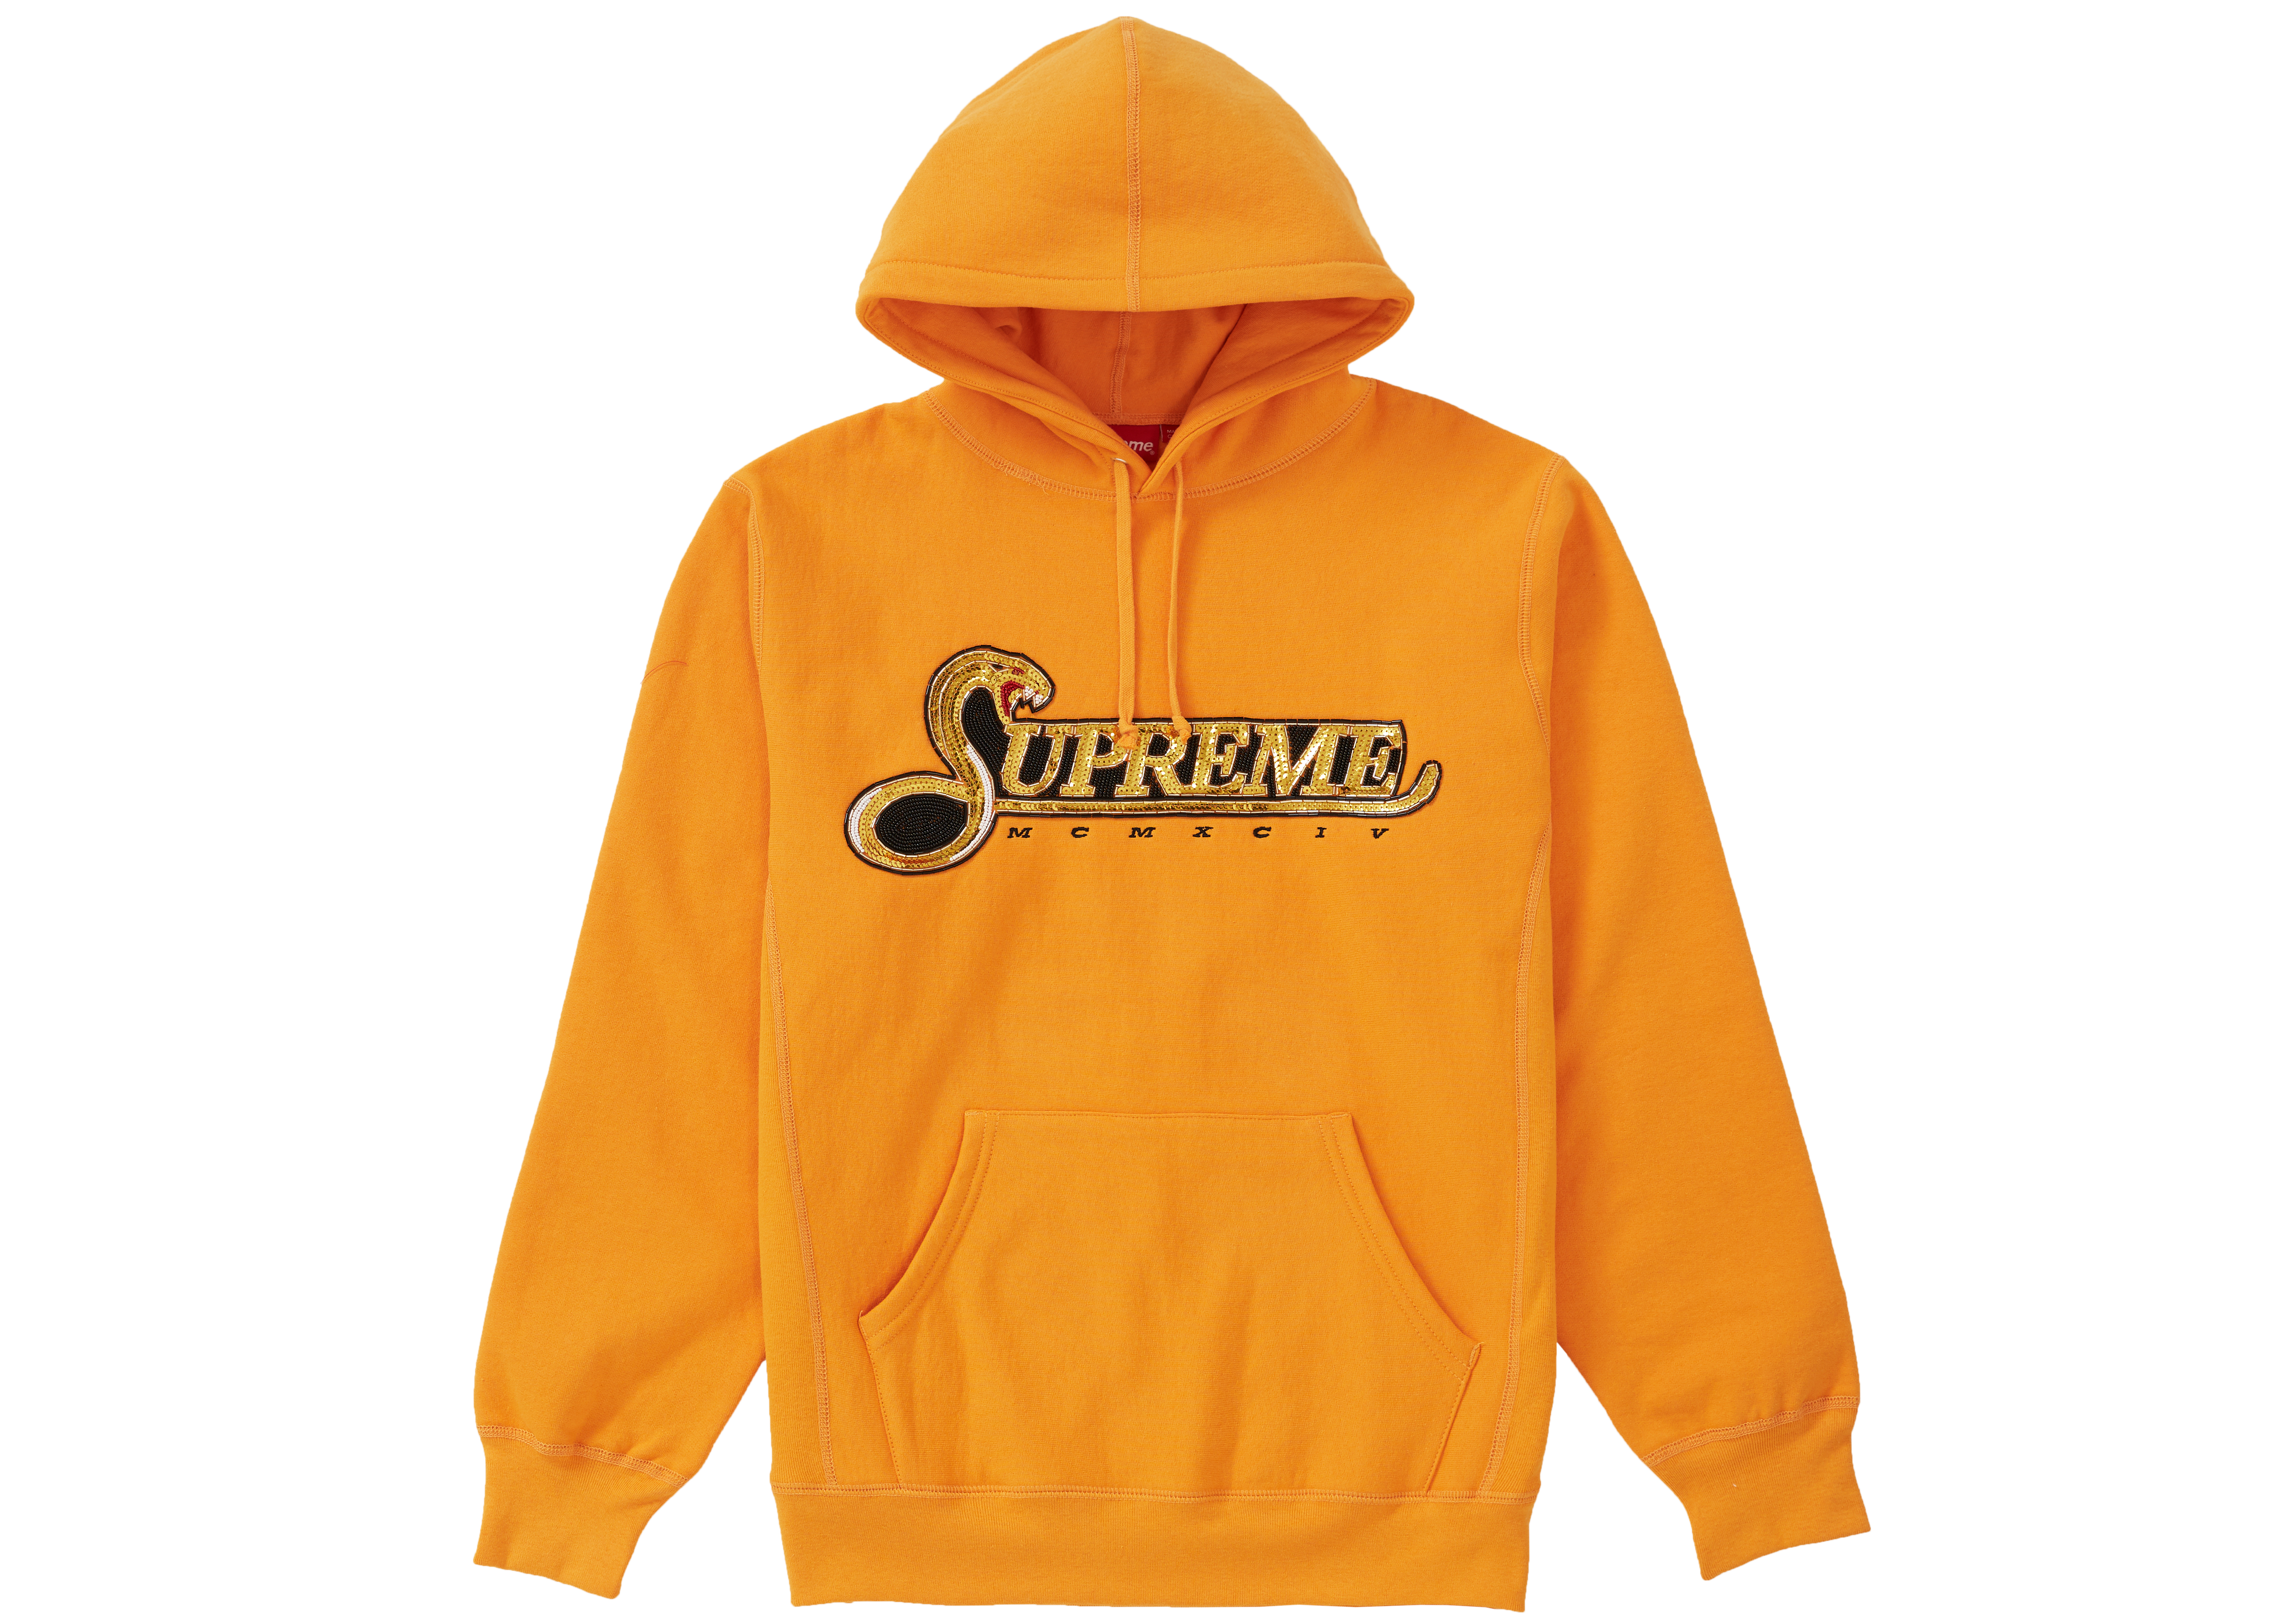 Supreme Sequin Viper Hooded Sweatshirt Tangerine - FW19 Men's - US